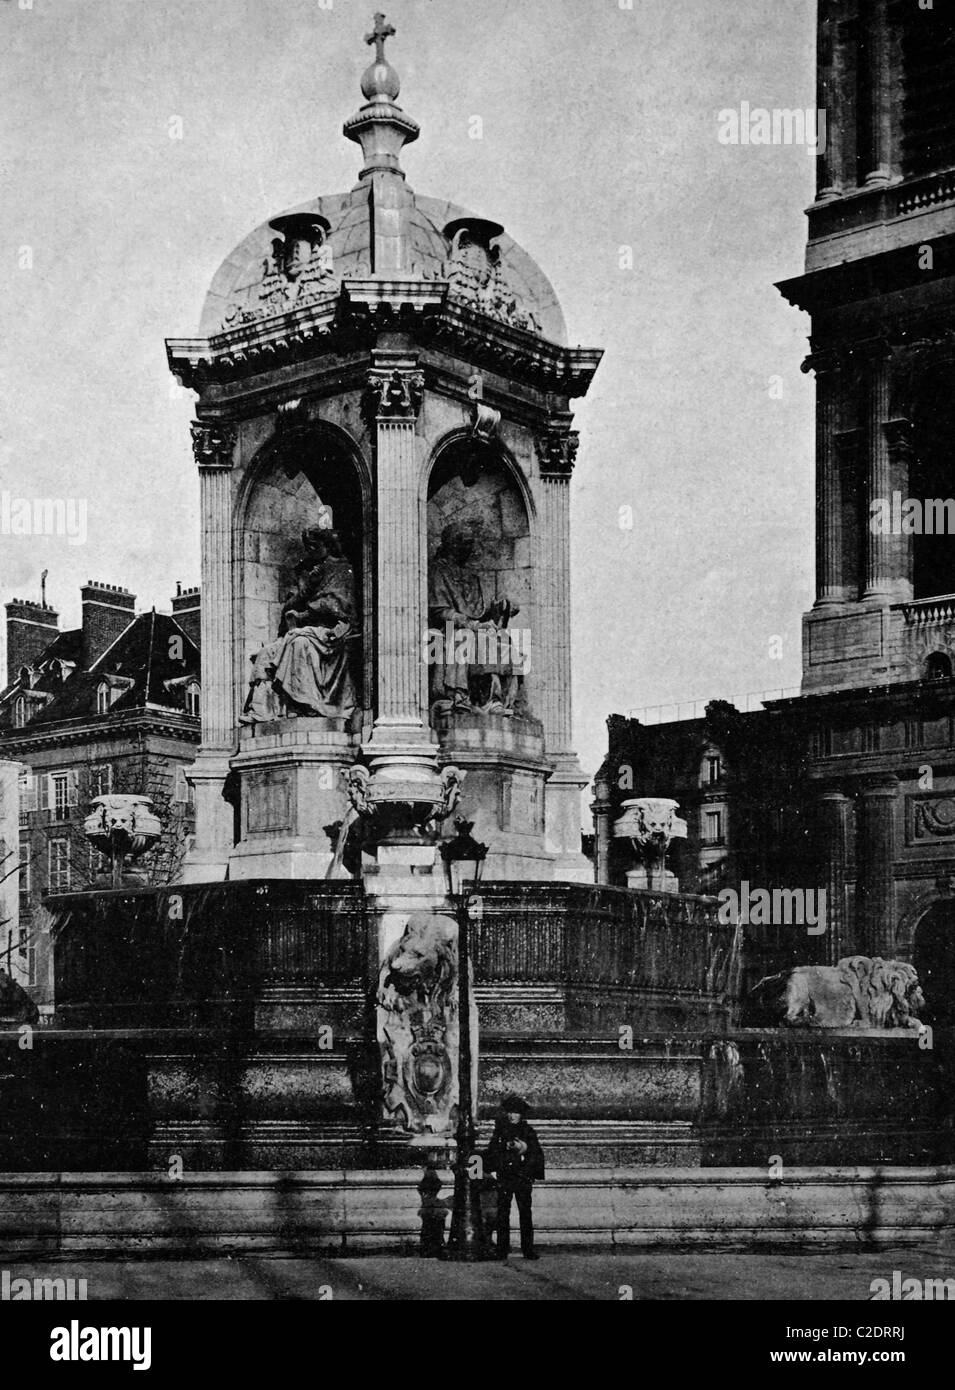 Una delle prime stampe di Autotype, Fontaine Saint Sulpice fontana, fotografia storica, 1884, Parigi, Francia, Europa Foto Stock